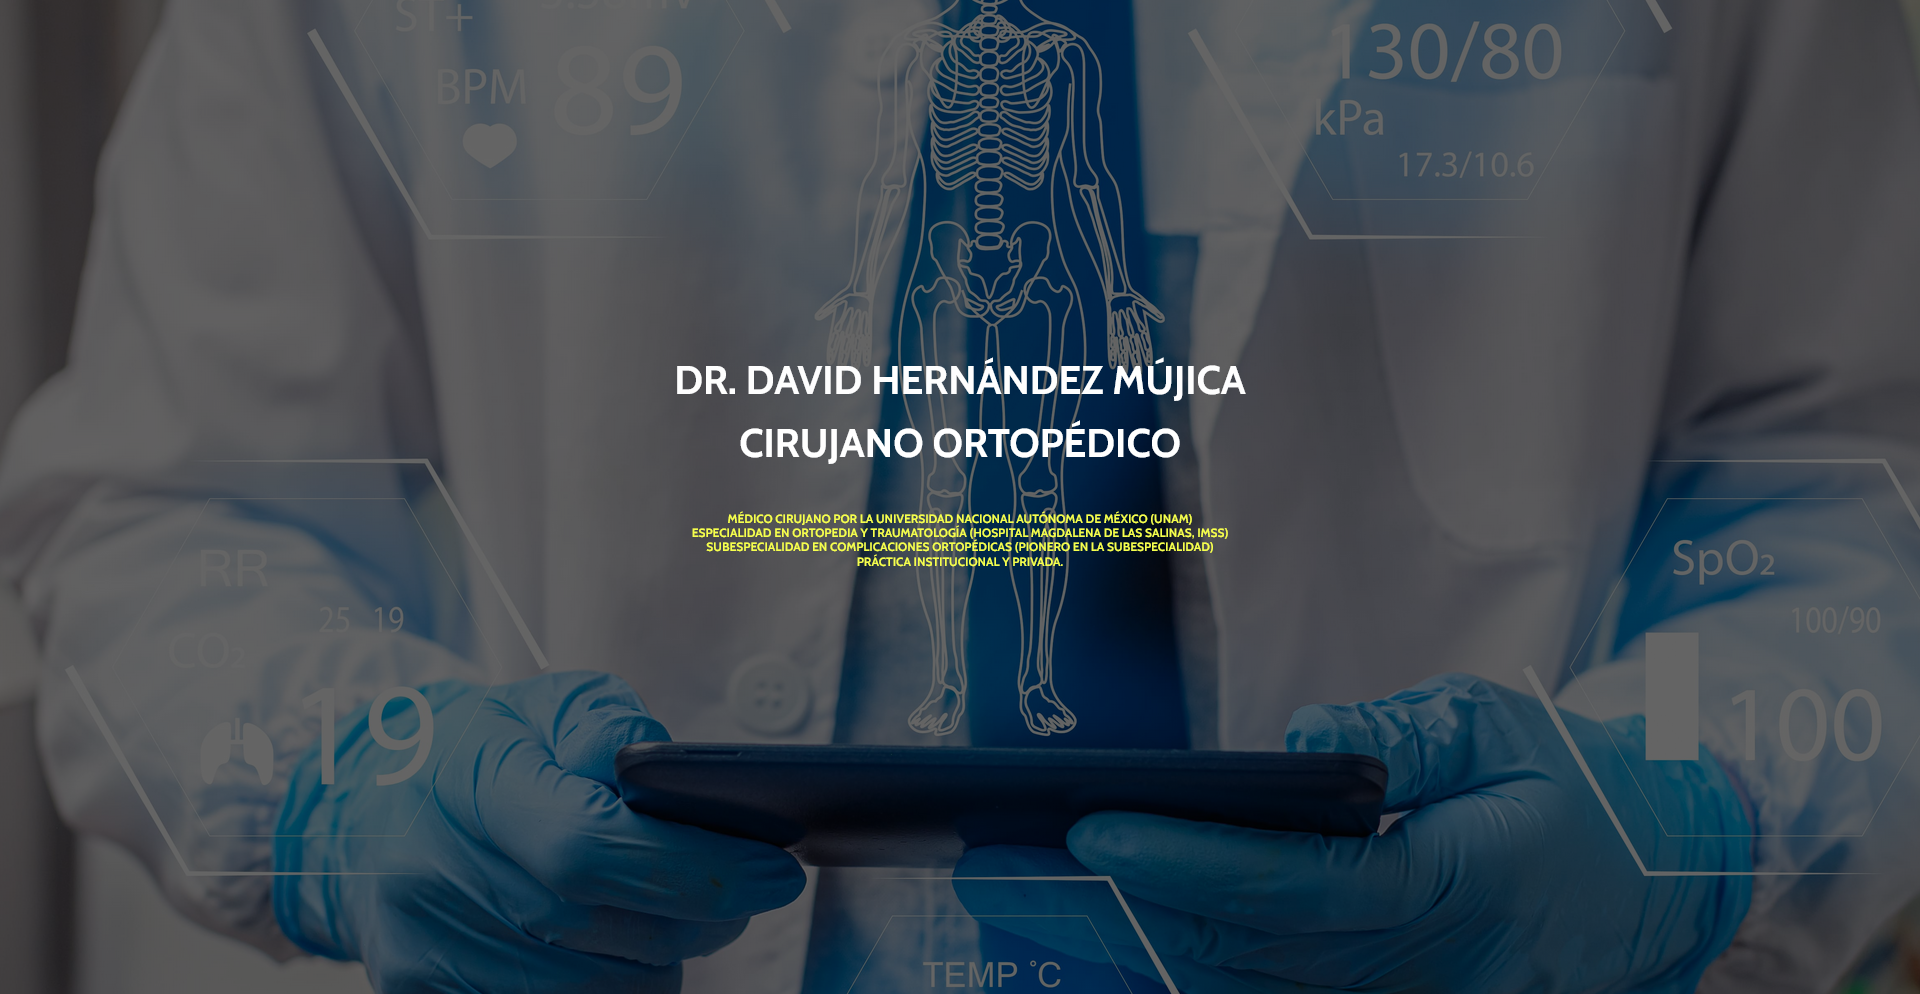 Complicaciones Ortopedicas – Nuestros pacientes rehabilitados nos rec_ - complicacionesortopedicas.com.mx